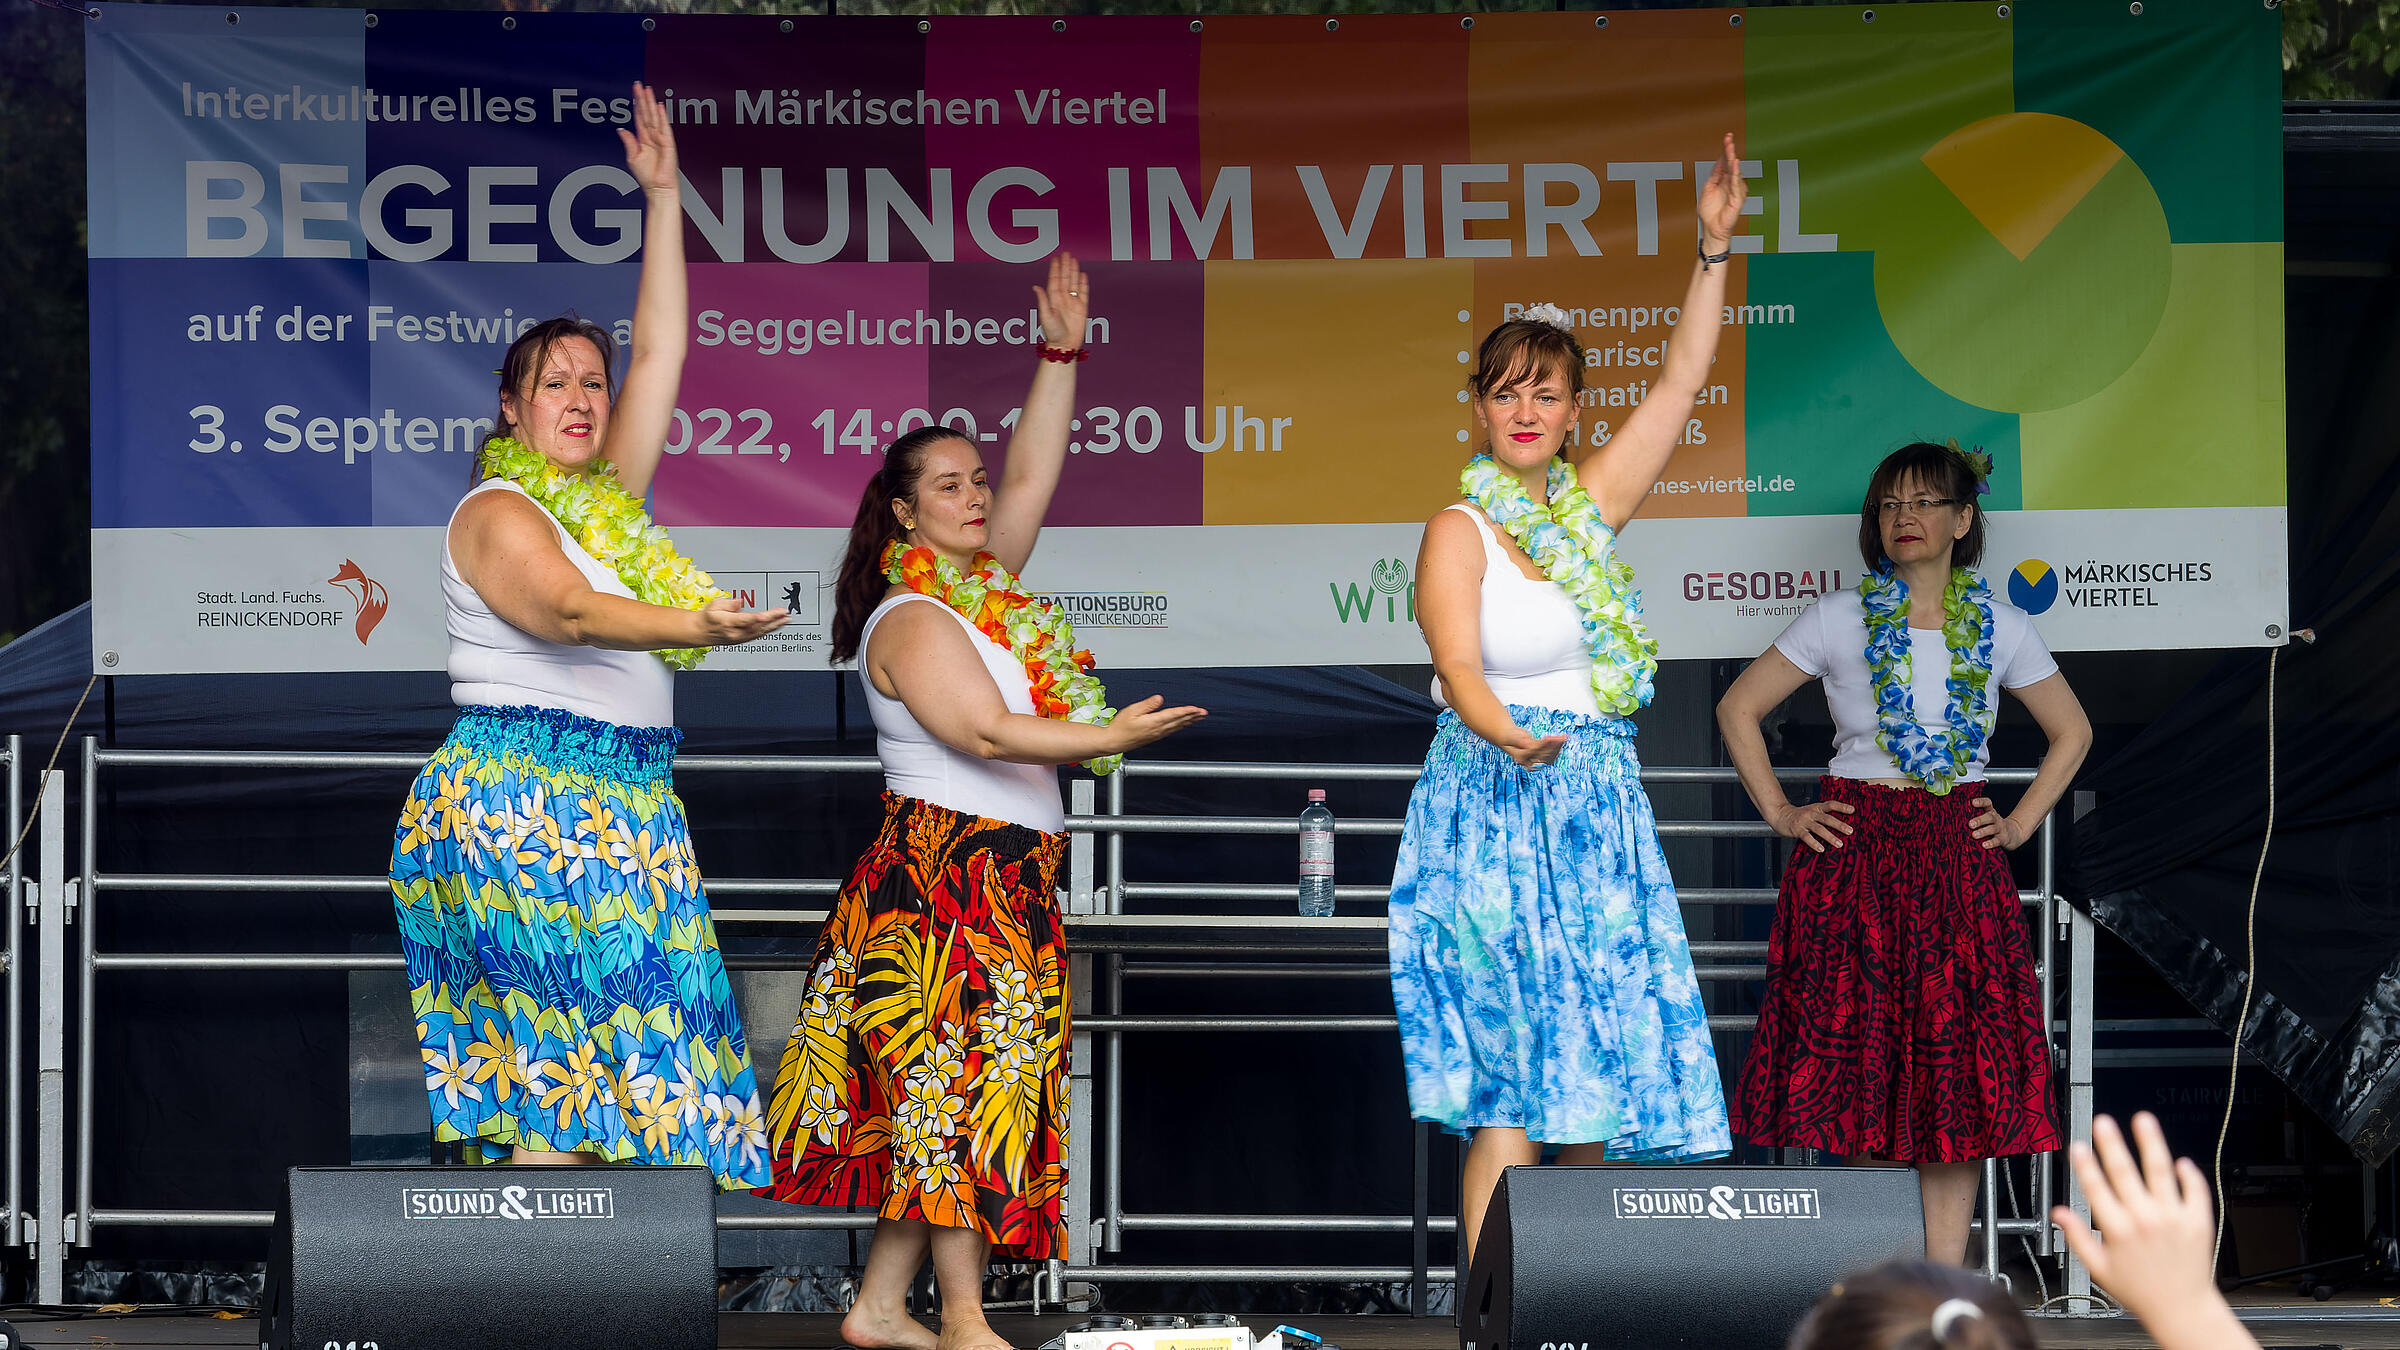 Außenaufnahme zeigt vier Tänzerinnen mit blumigen, langen Röcken und Blumengirlanden auf einer Bühne. 